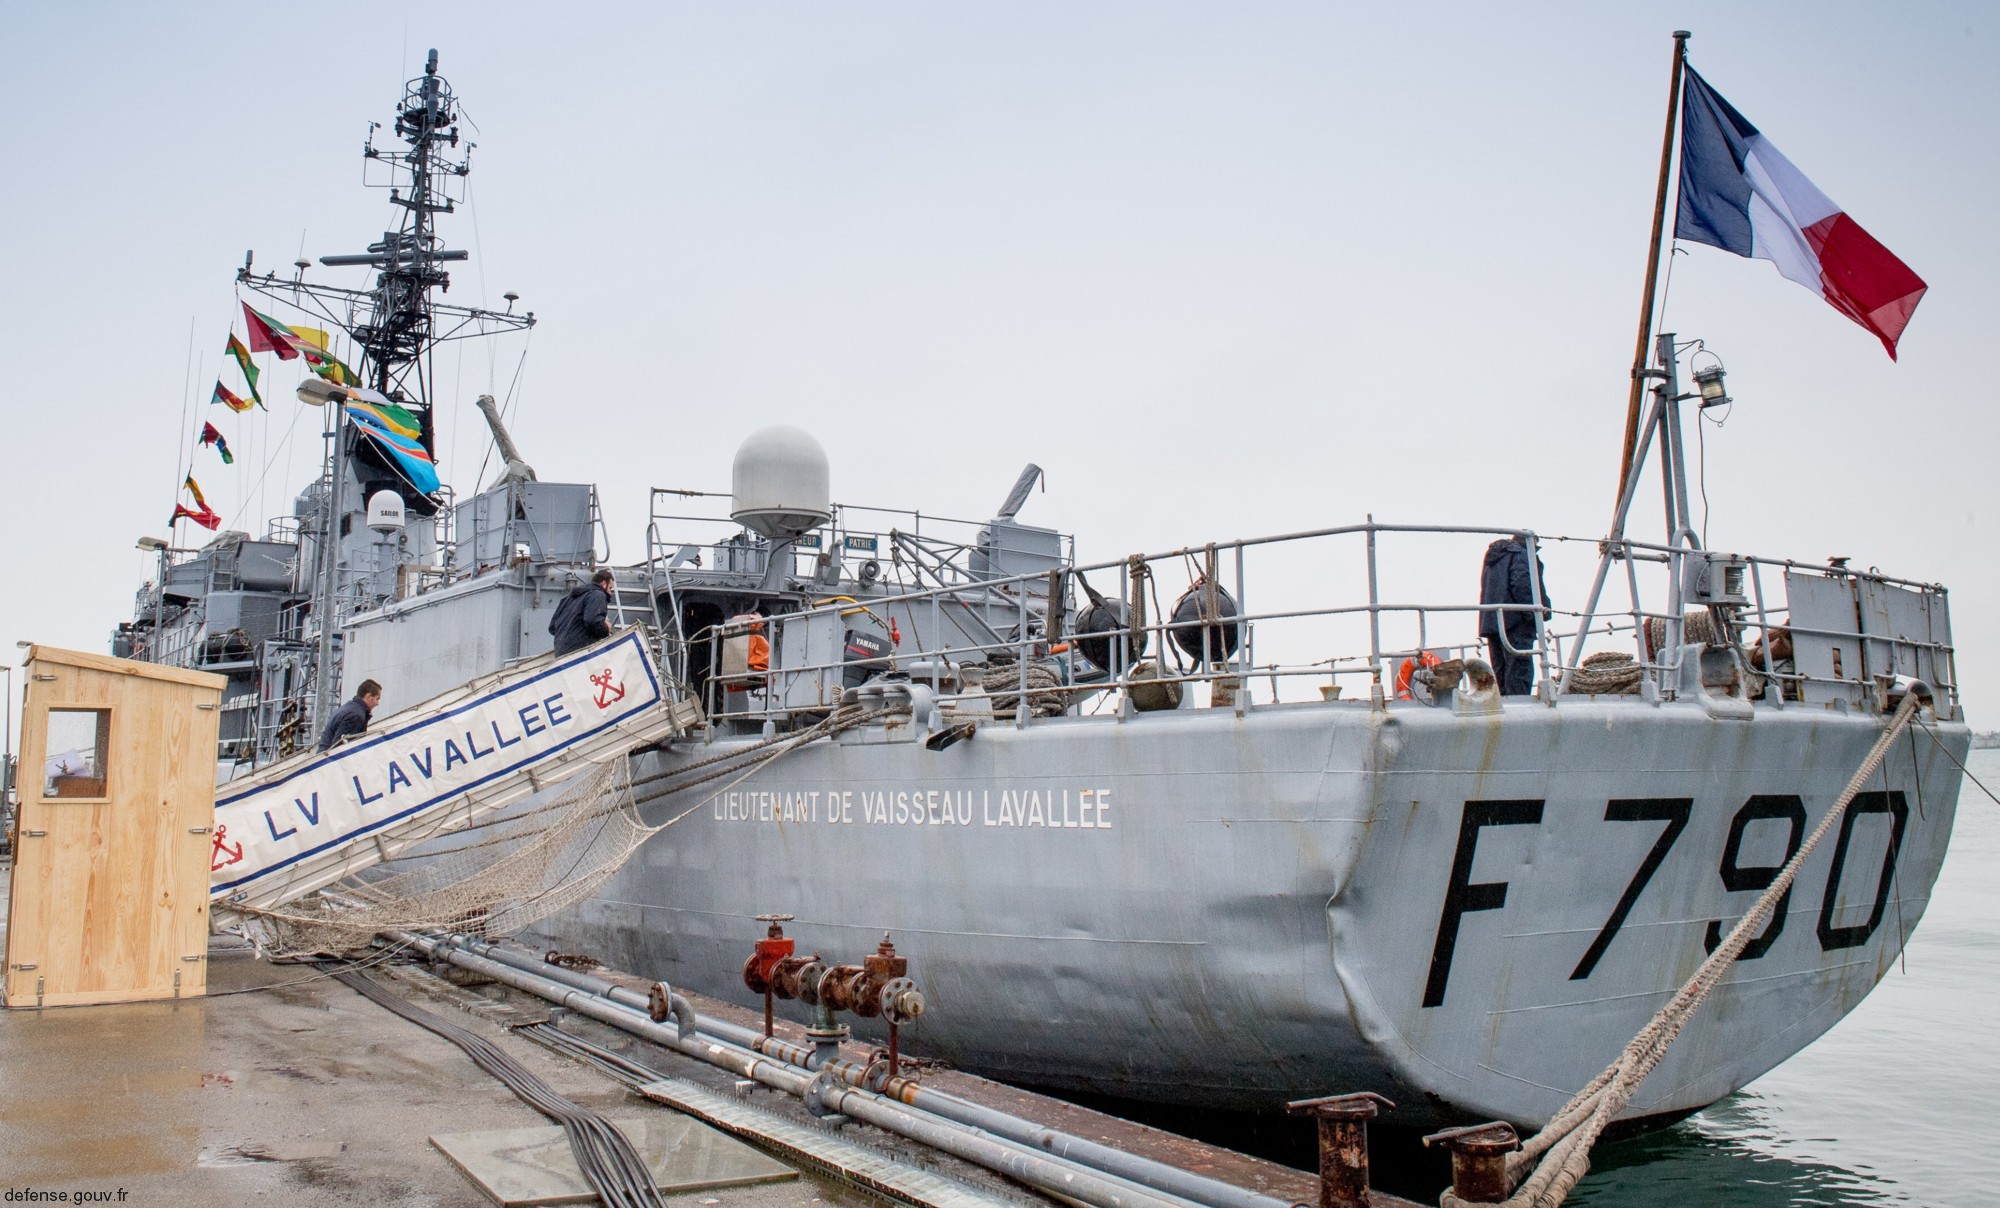 f-790 fs lieutenant de vaisseau lavallee d'estienne d'orves class corvette type a69 aviso french navy marine nationale 05